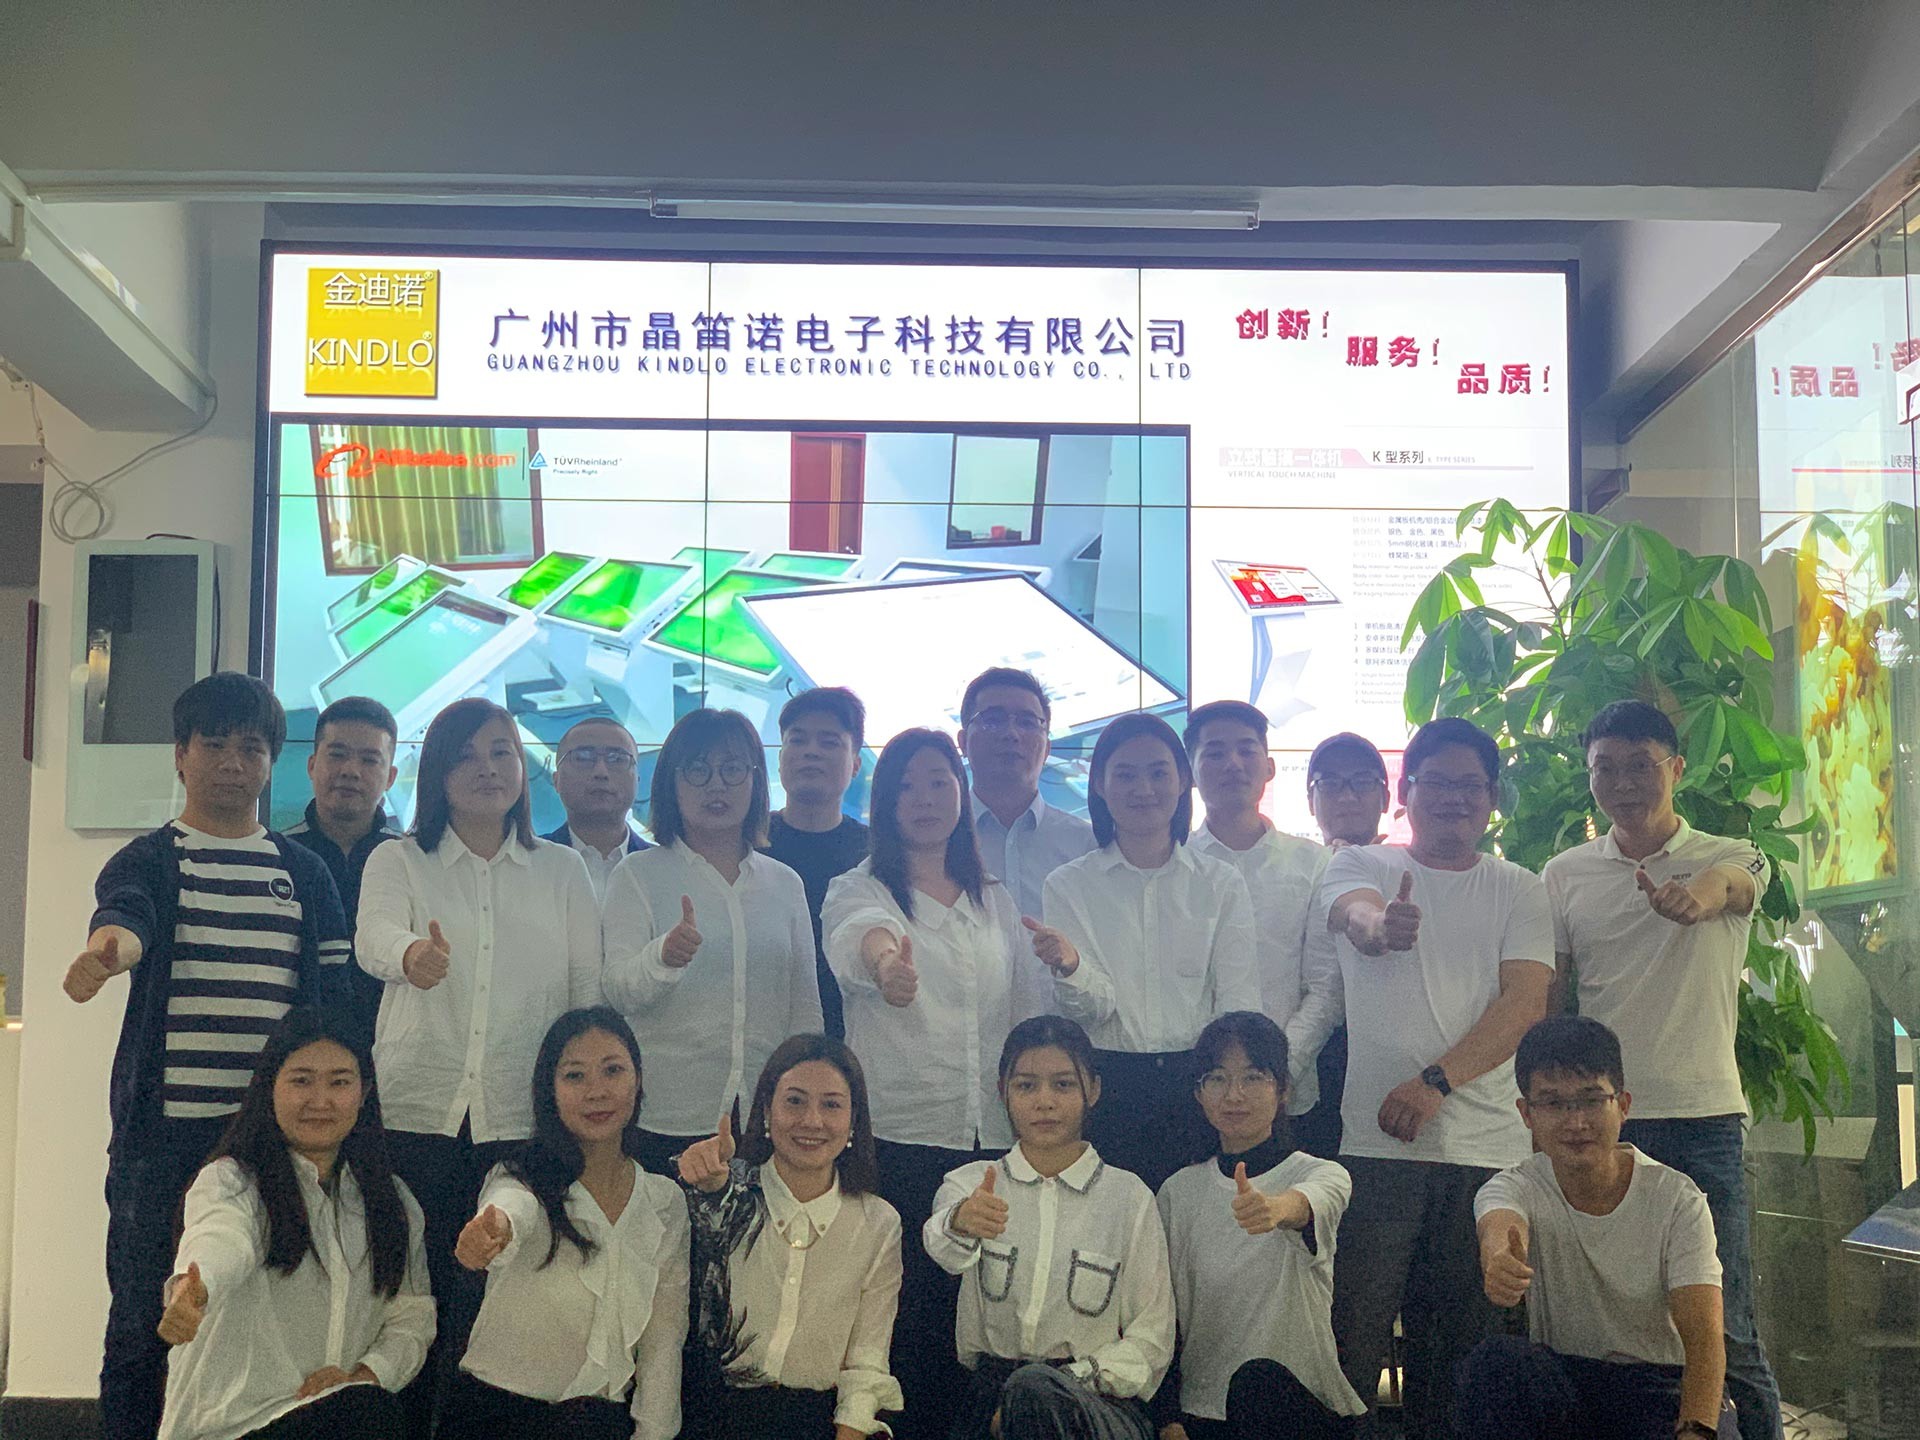 中国 Guangzhou Jingdinuo Electronic Technology Co., Ltd. 会社概要